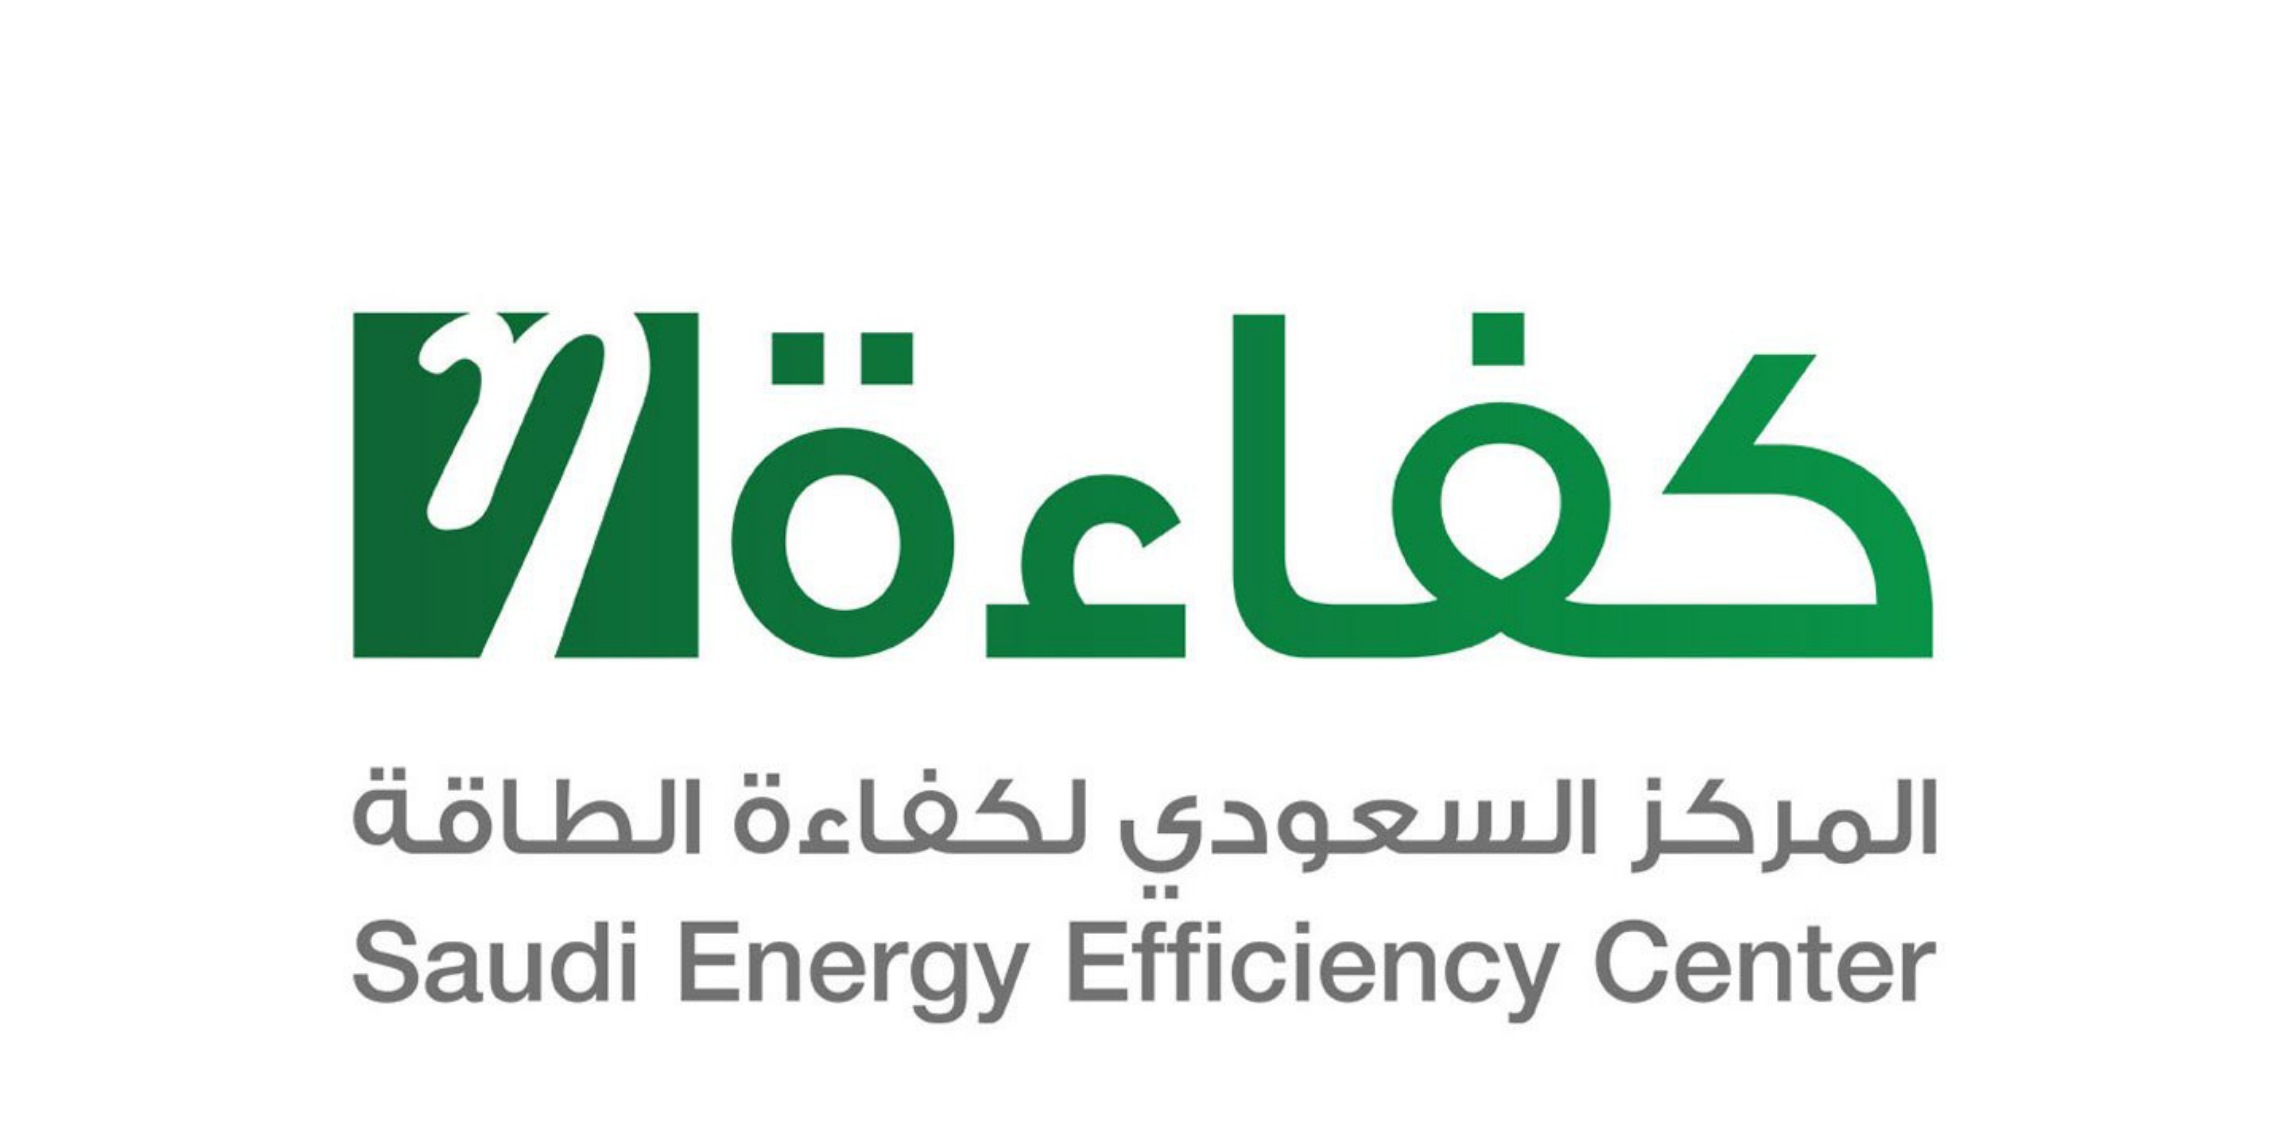 المركز السعودي لكفاءة الطاقة يعلن عن توفر فرص وظيفية شاغرة